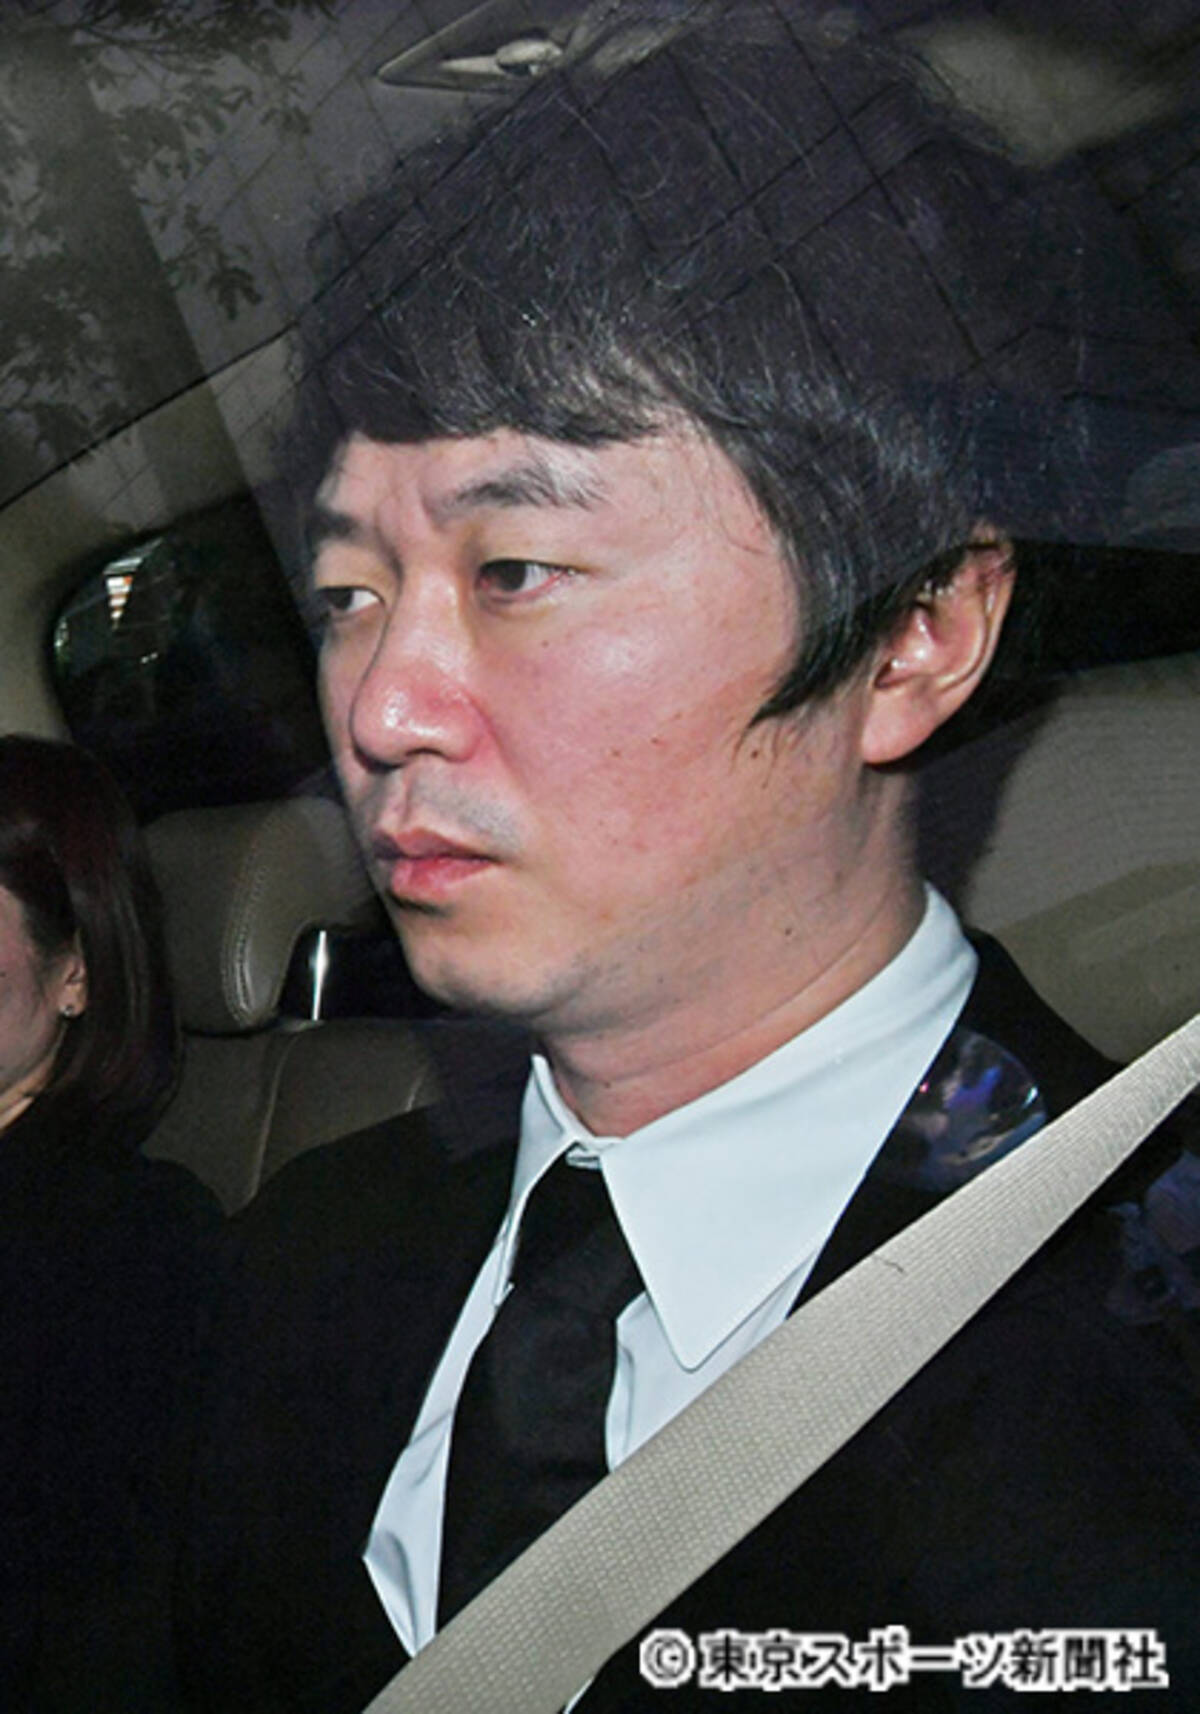 新井浩文被告に懲役５年求刑 本人は無罪を主張 19年10月23日 エキサイトニュース